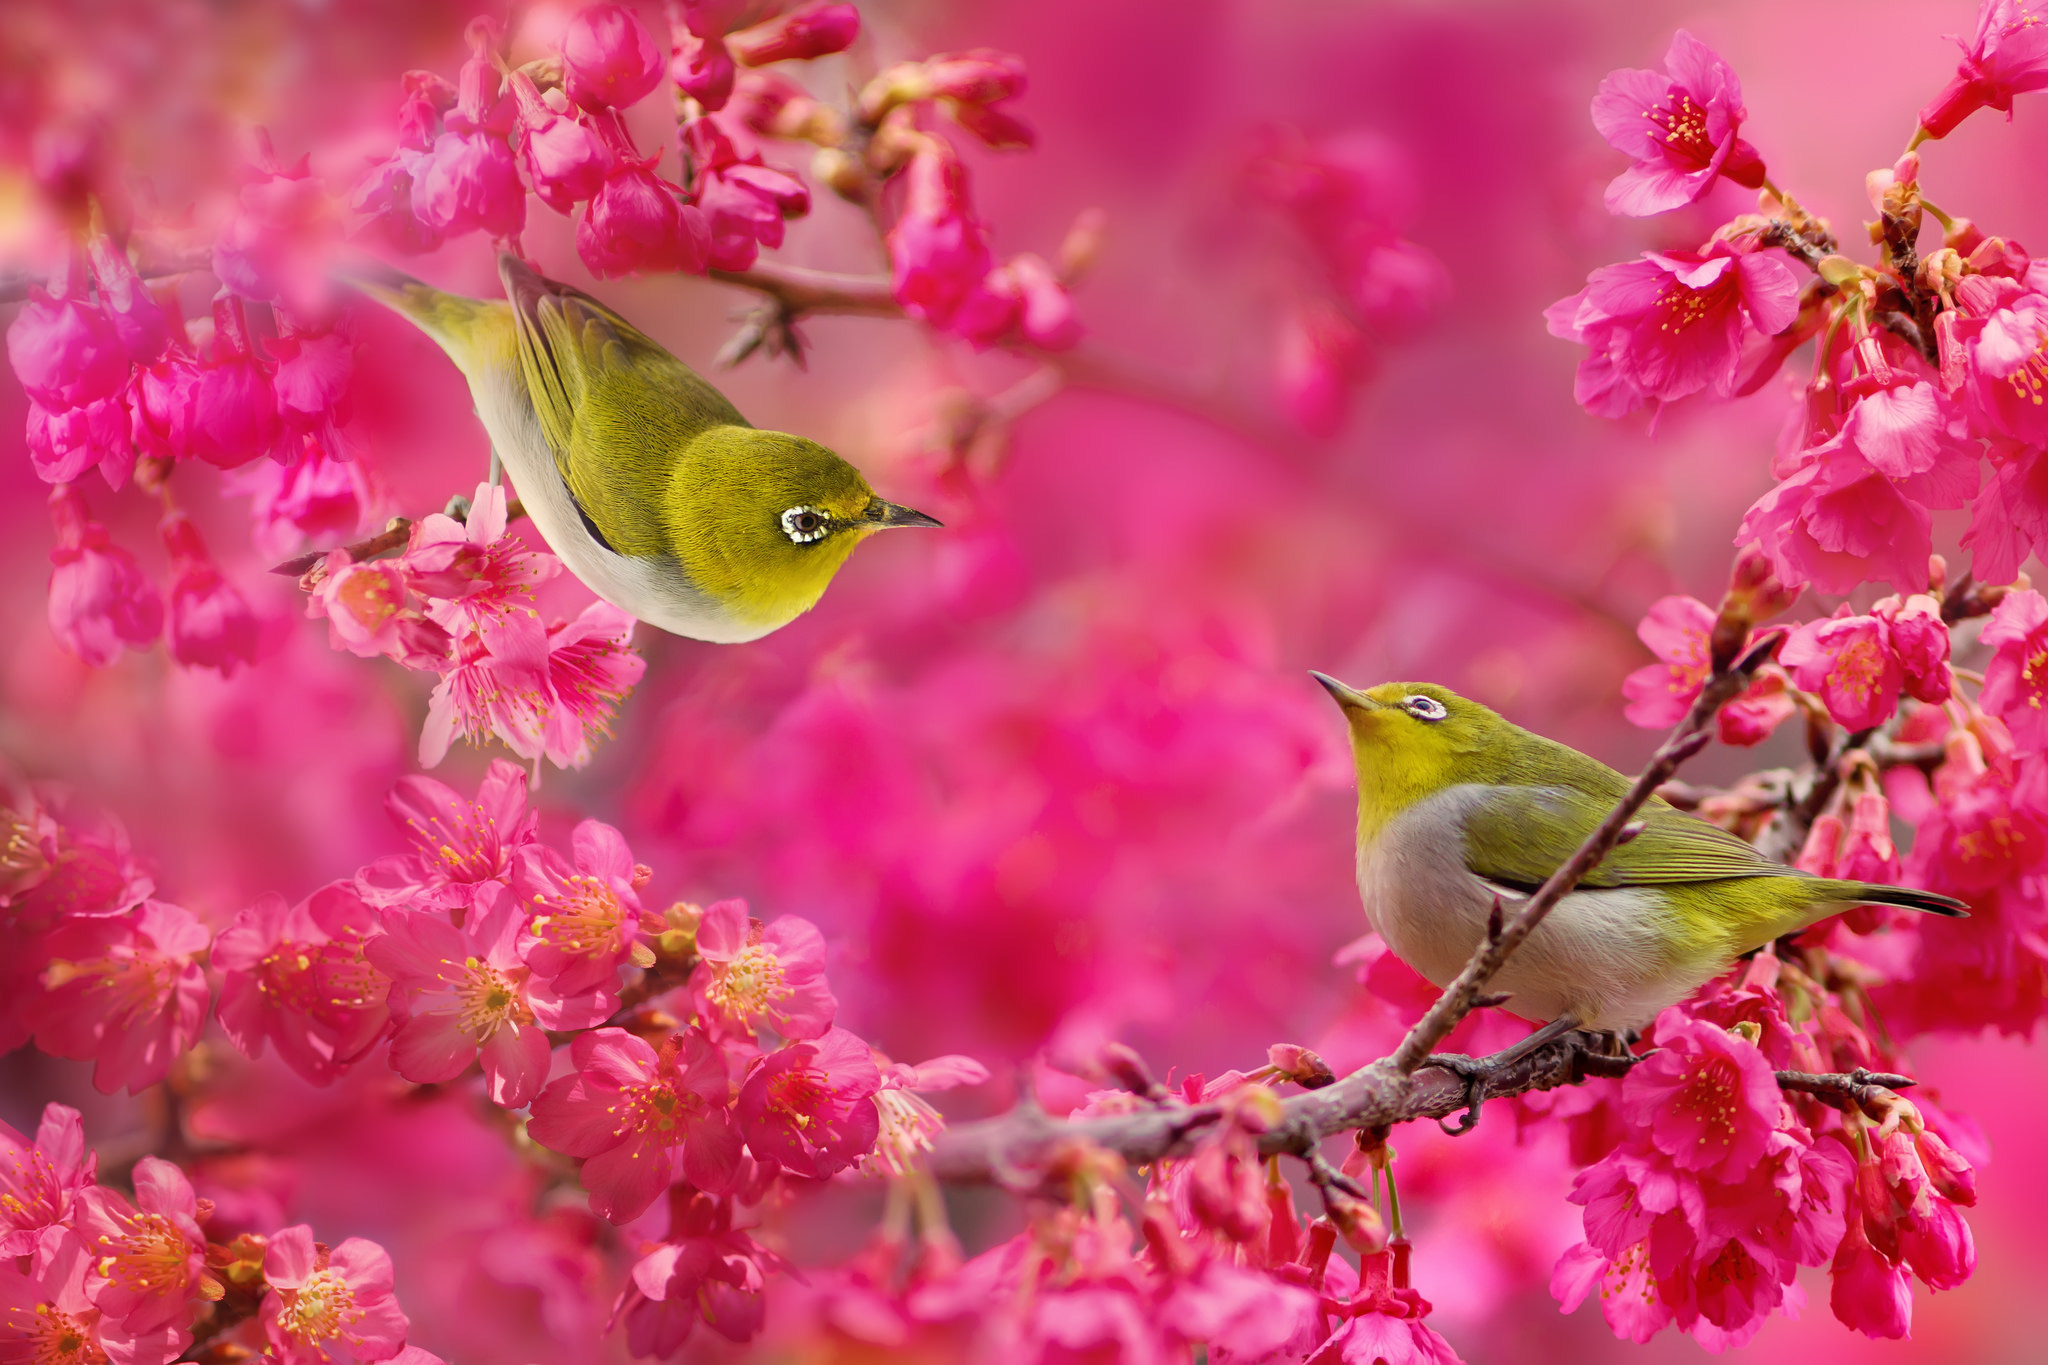 免费下载暗绿绣眼鸟, 粉色, 树枝, 樱花, 鸟, 鸟类, 动物, 自然手机壁纸。